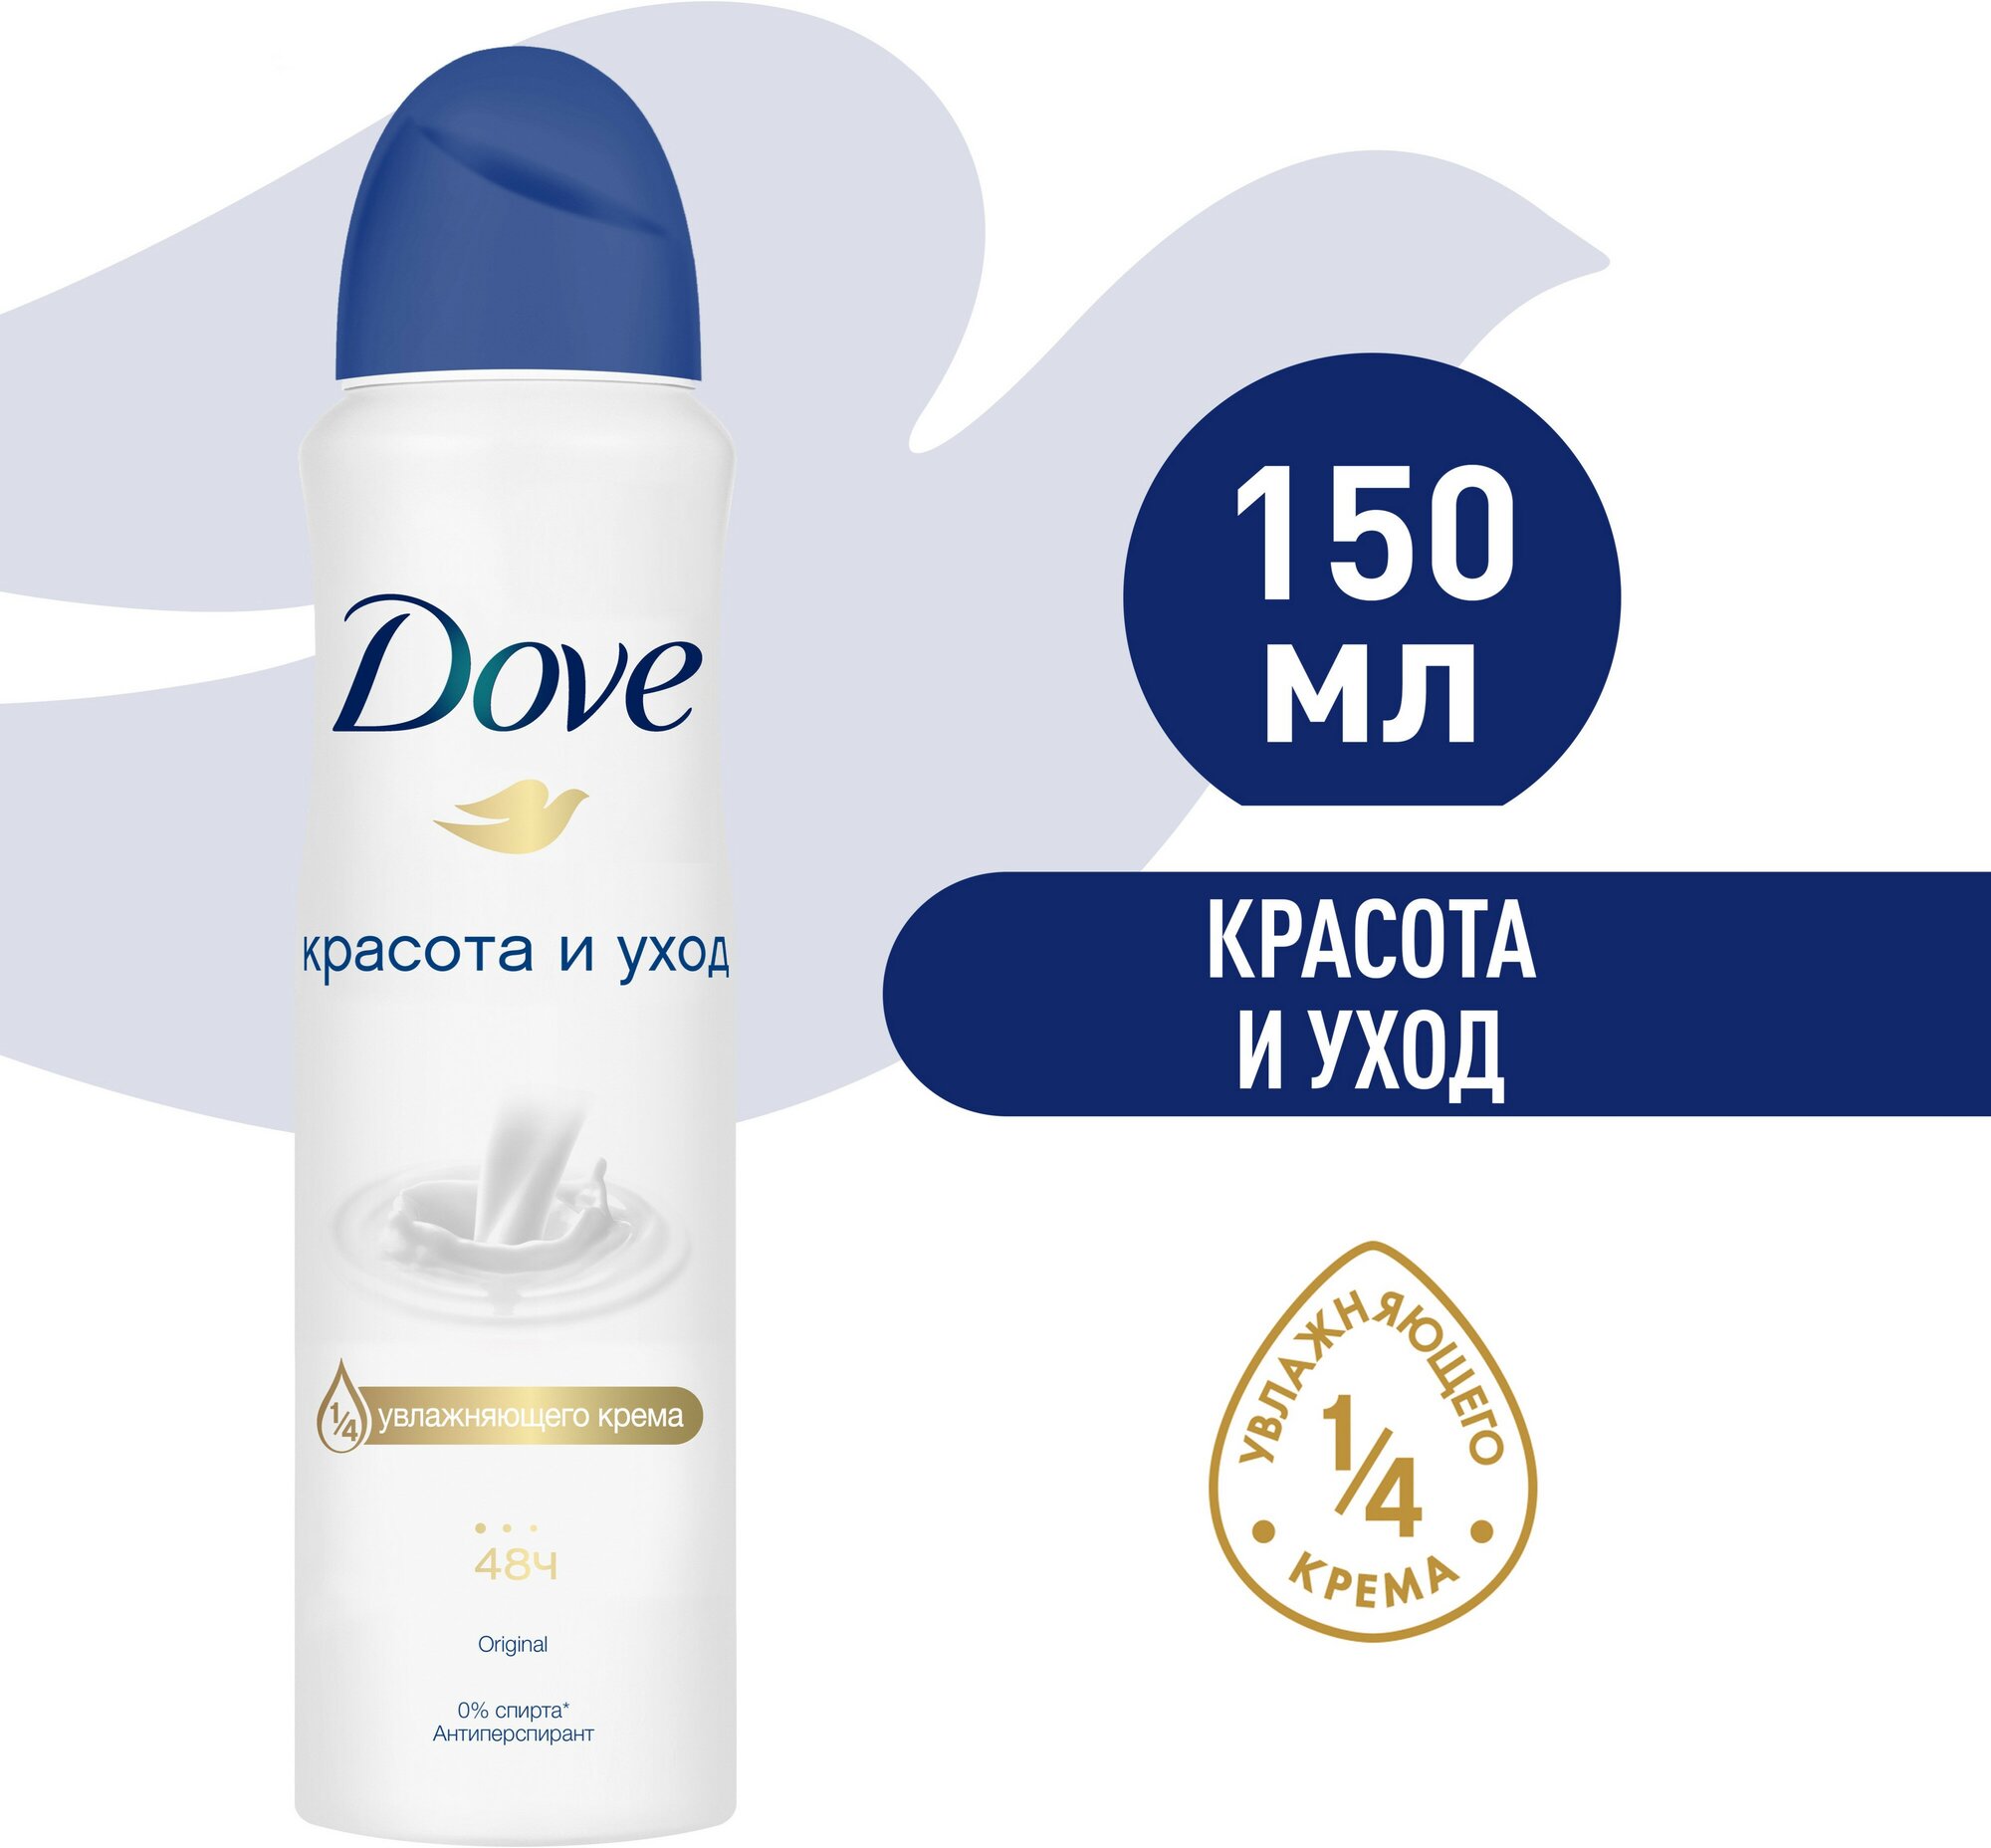 Dove антиперспирант-дезодорант аэрозоль красота и уход 1/4 увлажняющего крема 48ч защиты 150 мл